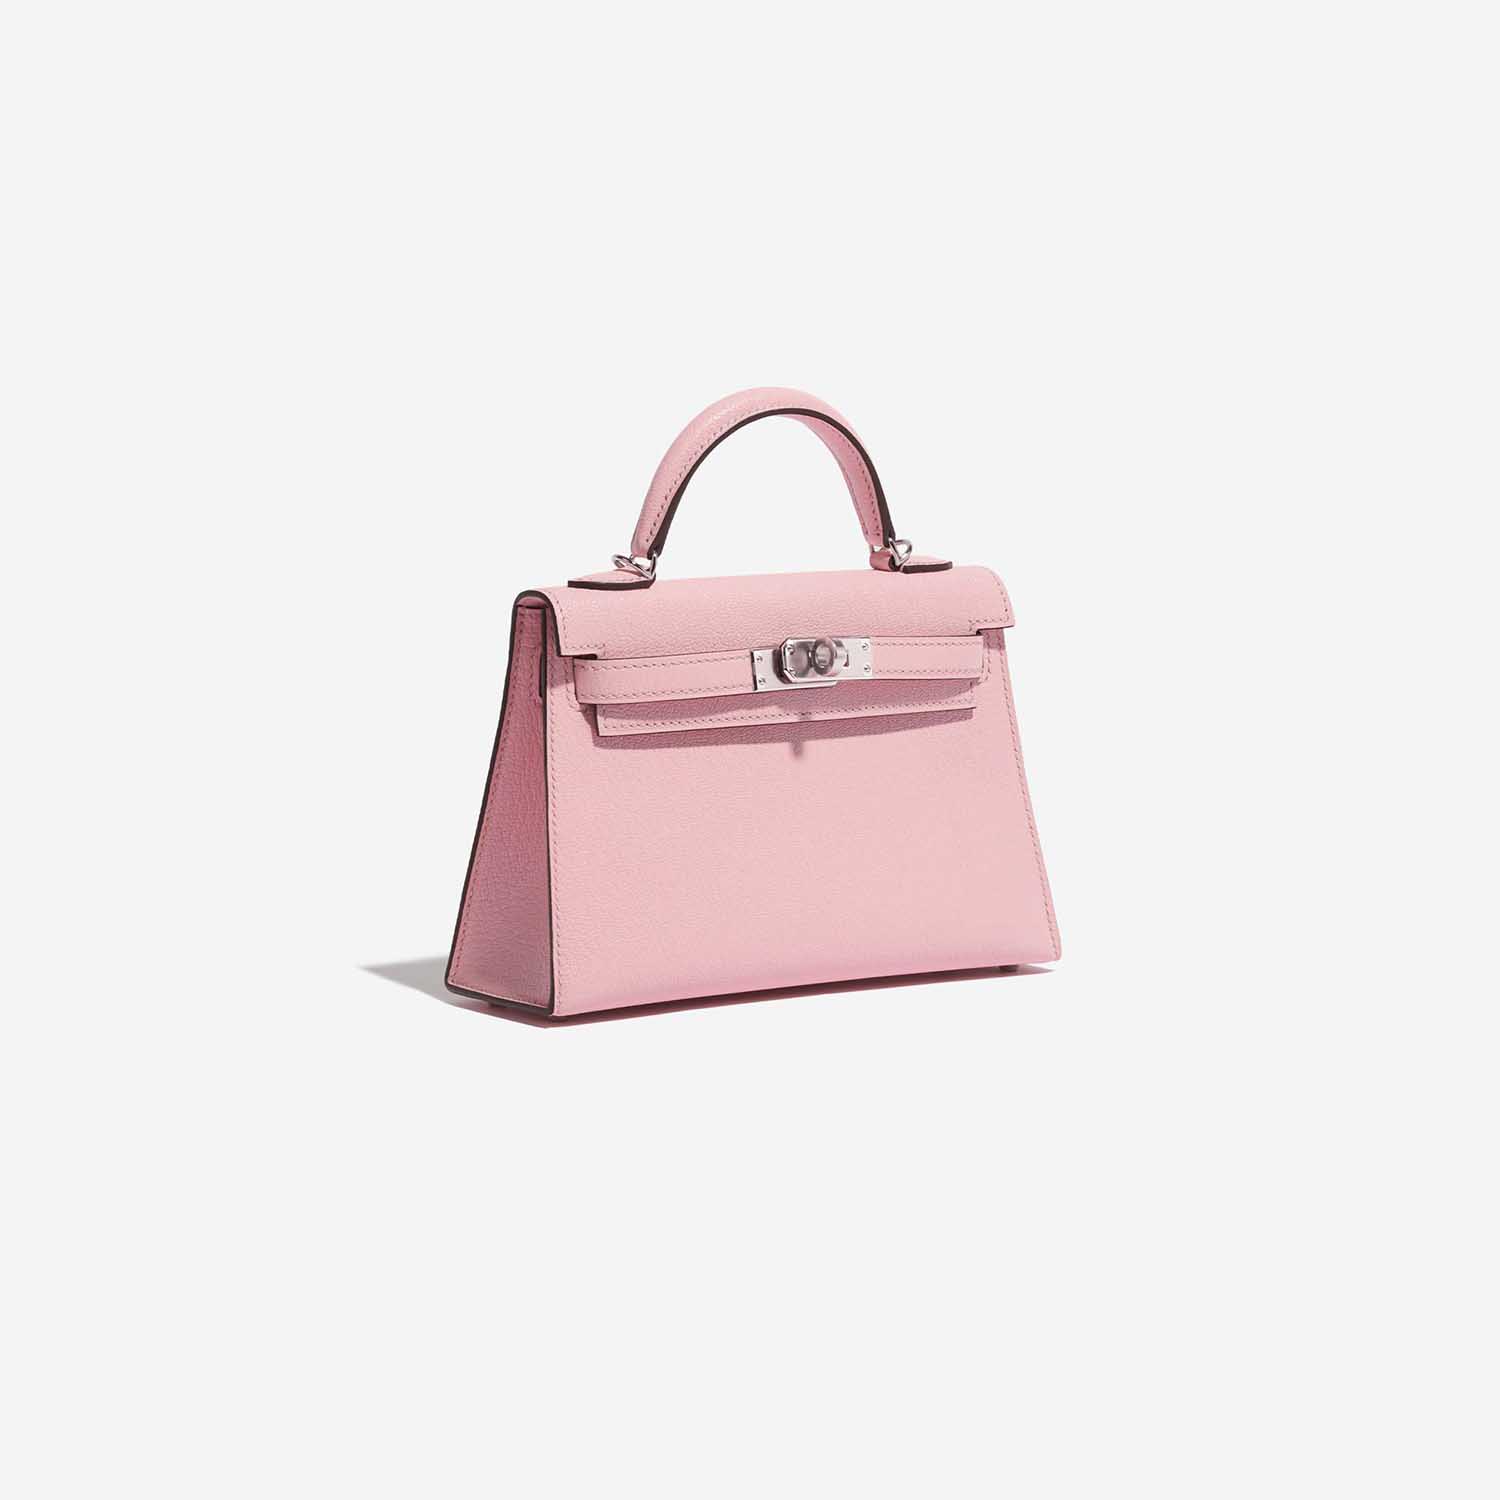 Hermès Kelly Mini RoseSakura Side Front | Verkaufen Sie Ihre Designer-Tasche auf Saclab.com